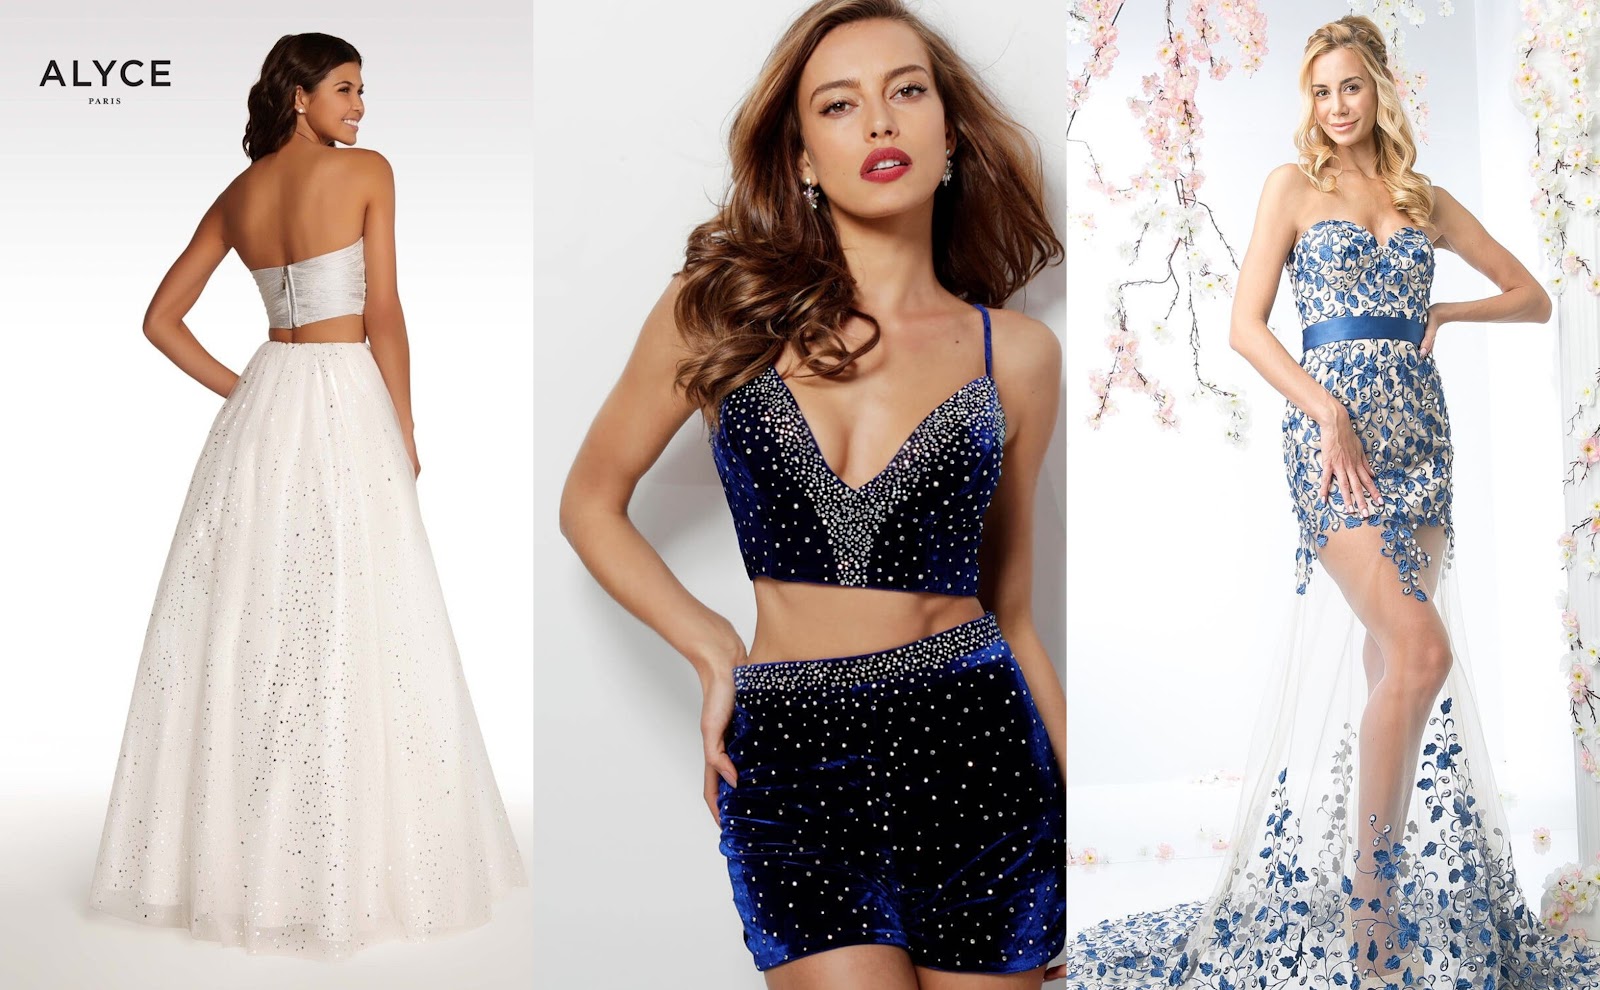 How to Find the Best Deals on Designer Dresses Online?